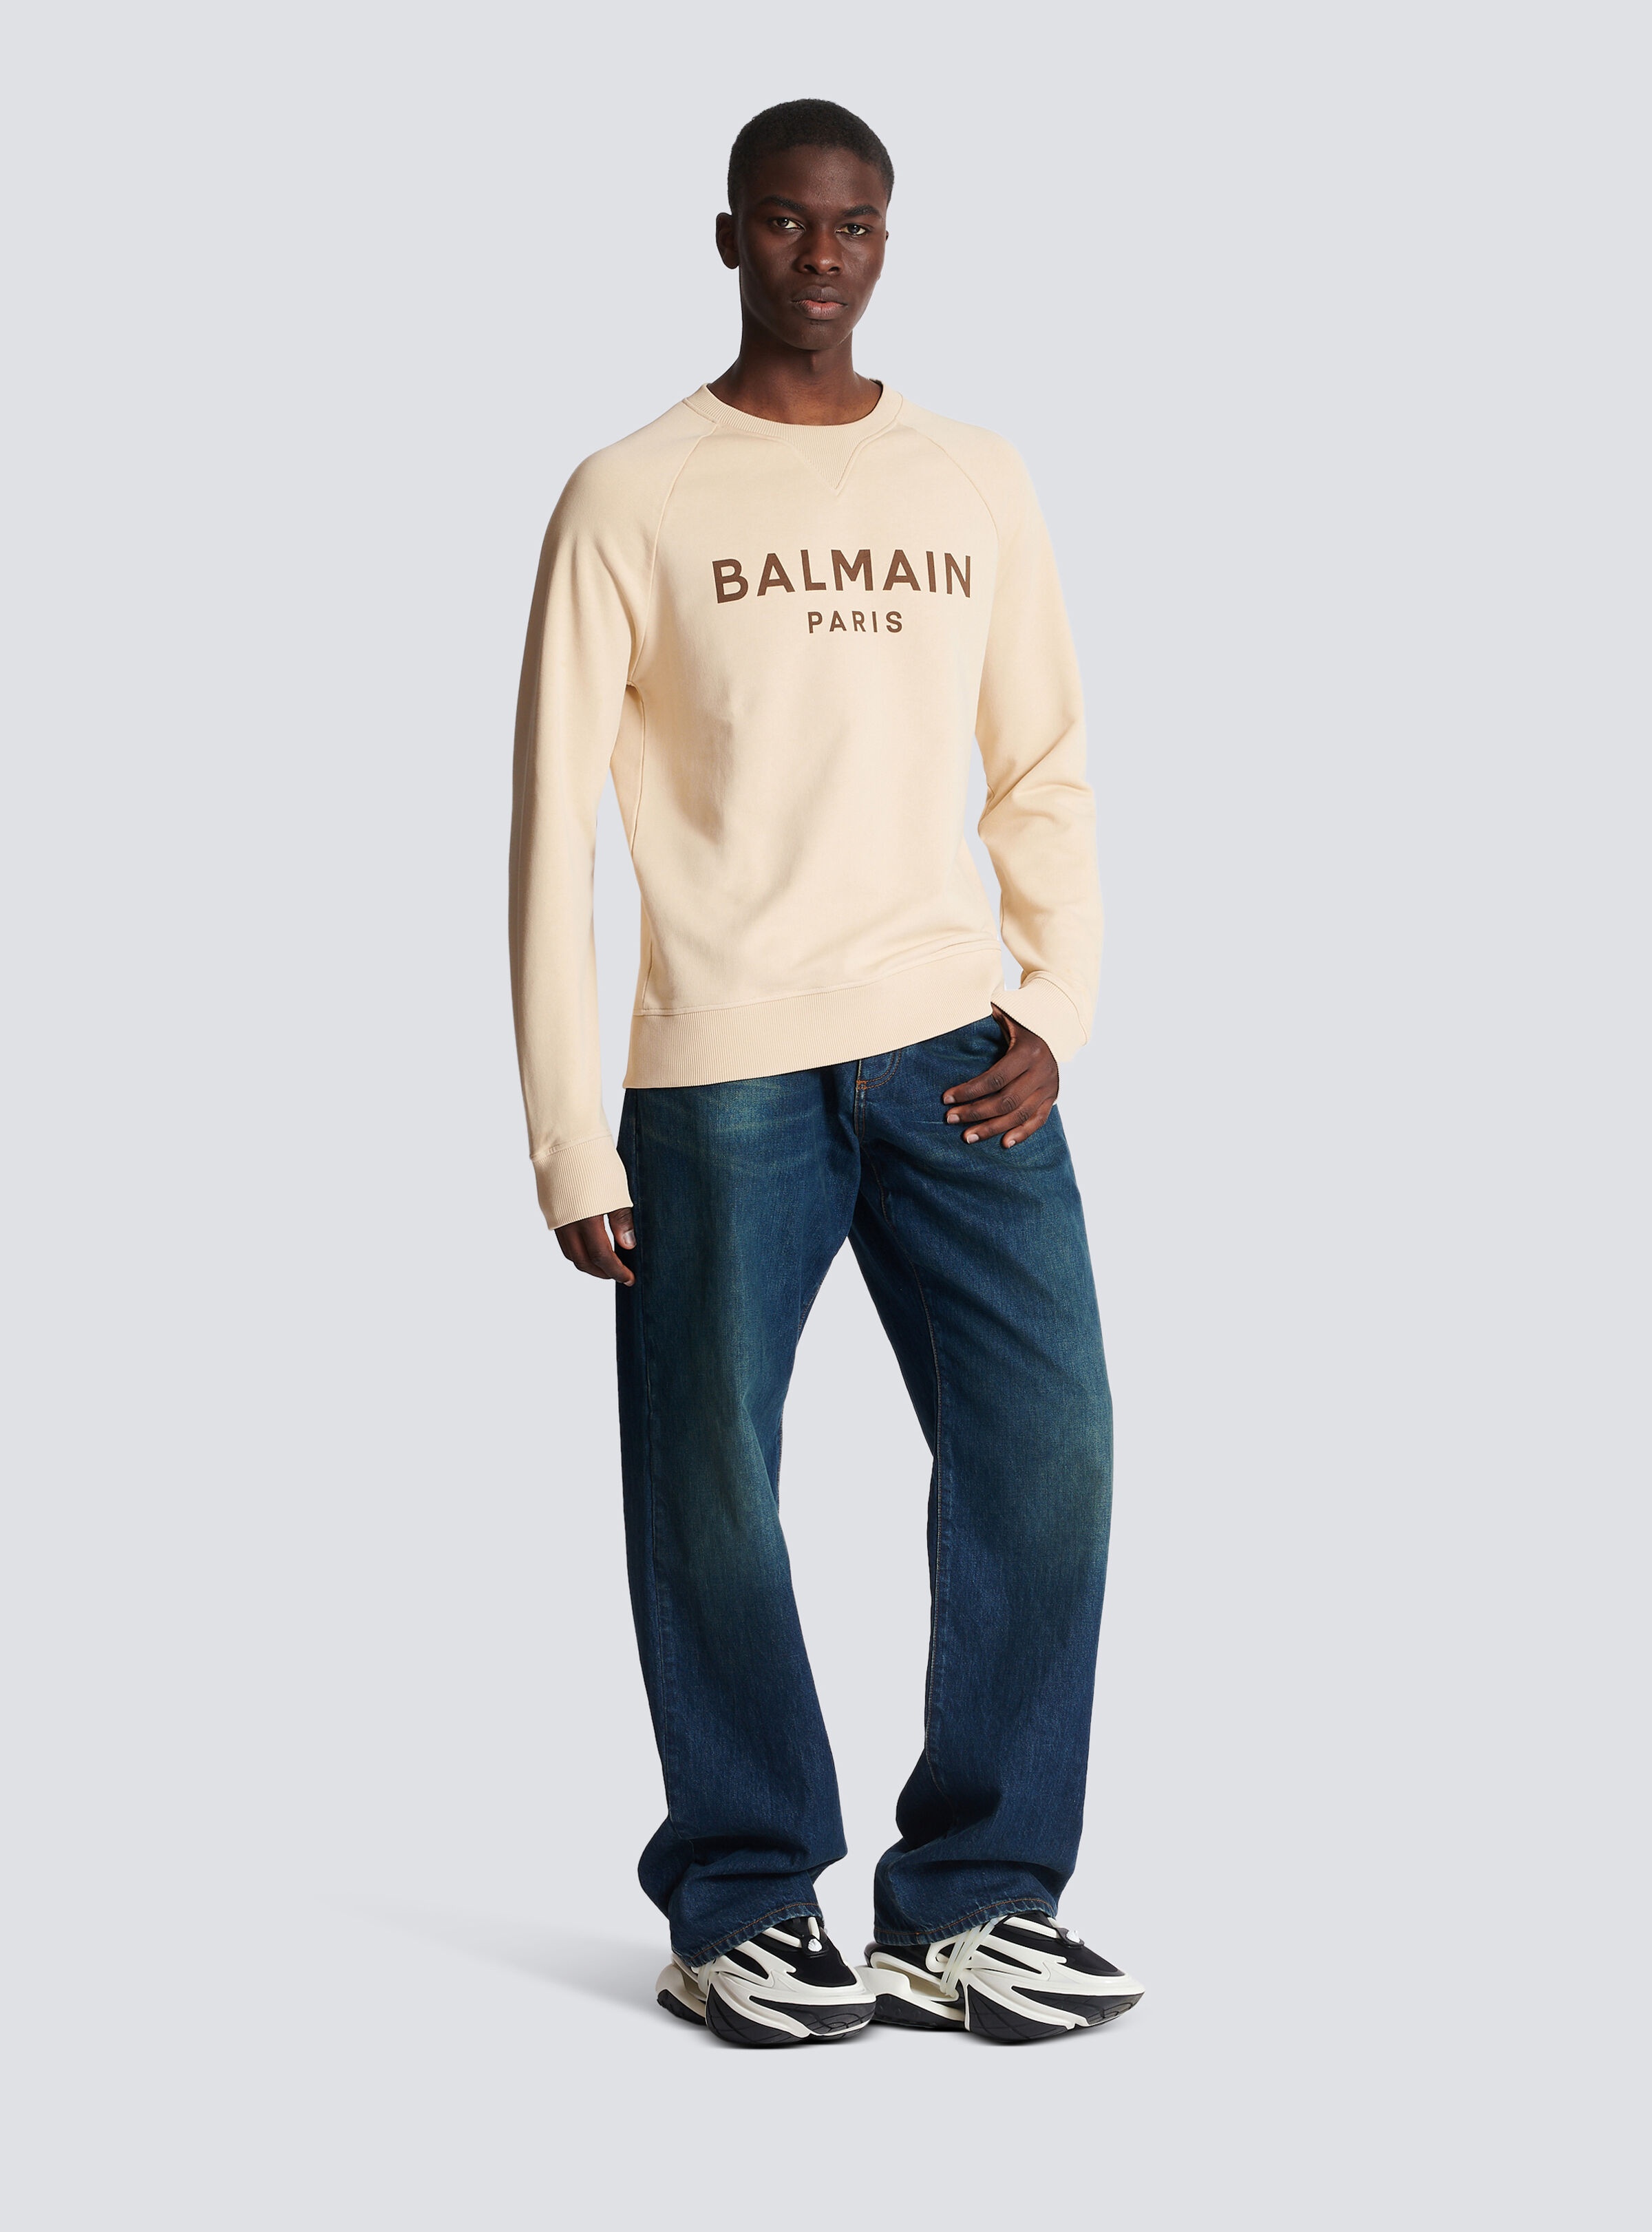 Balmain Paris printed sweatshirt - 3